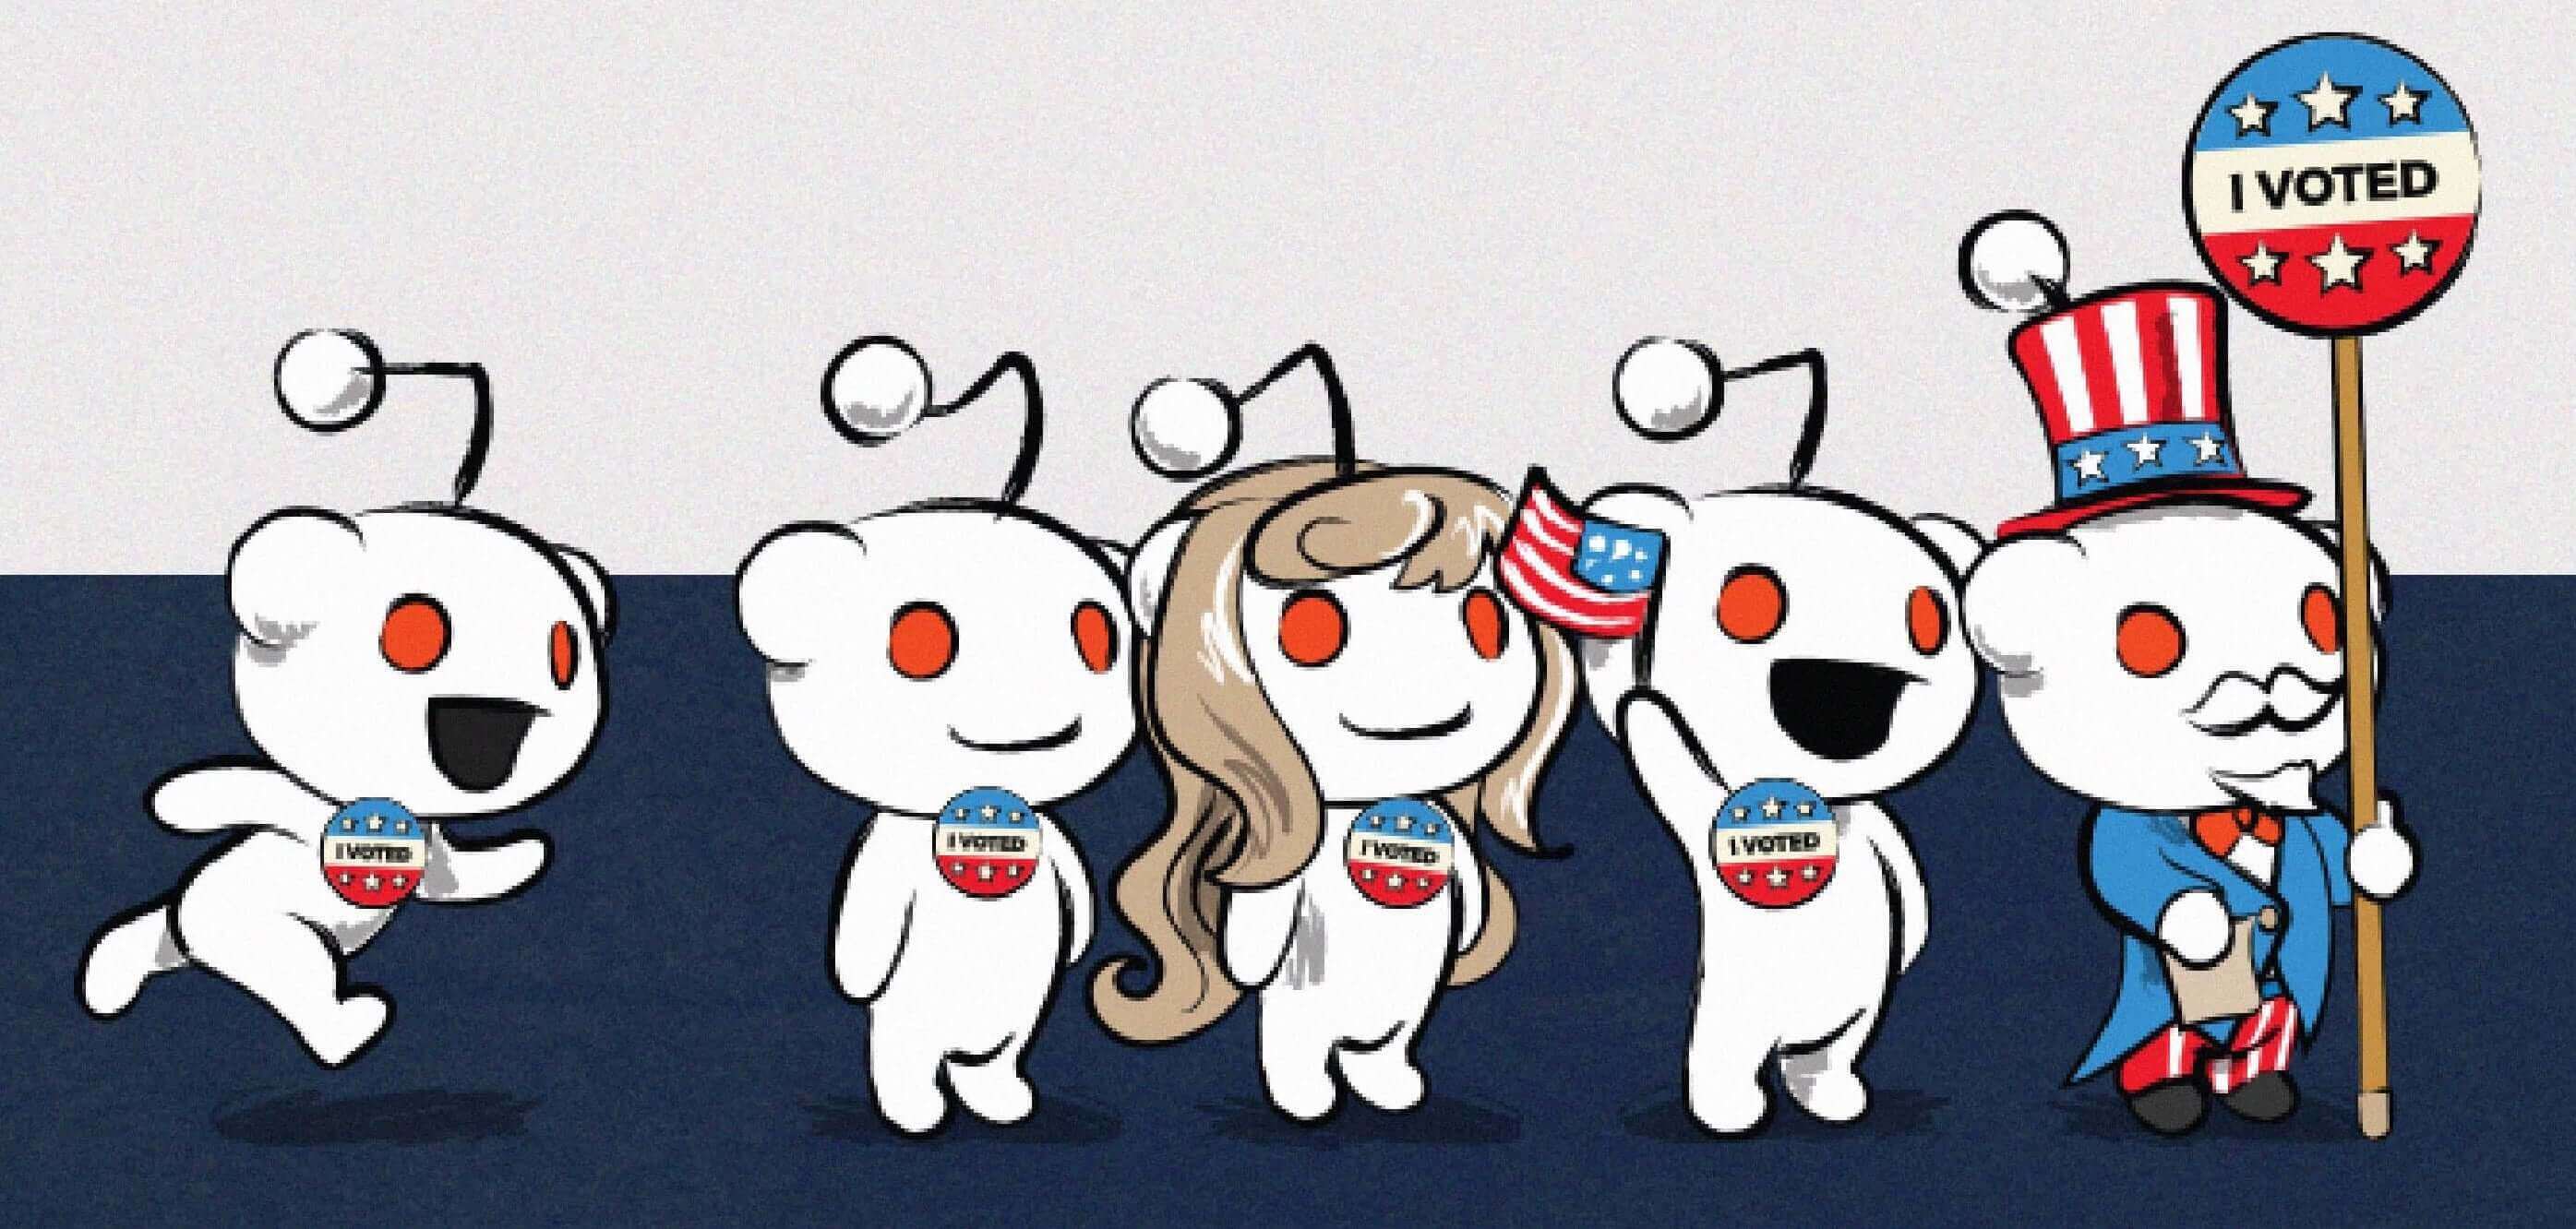 Reddit Background Image for /r/Politics